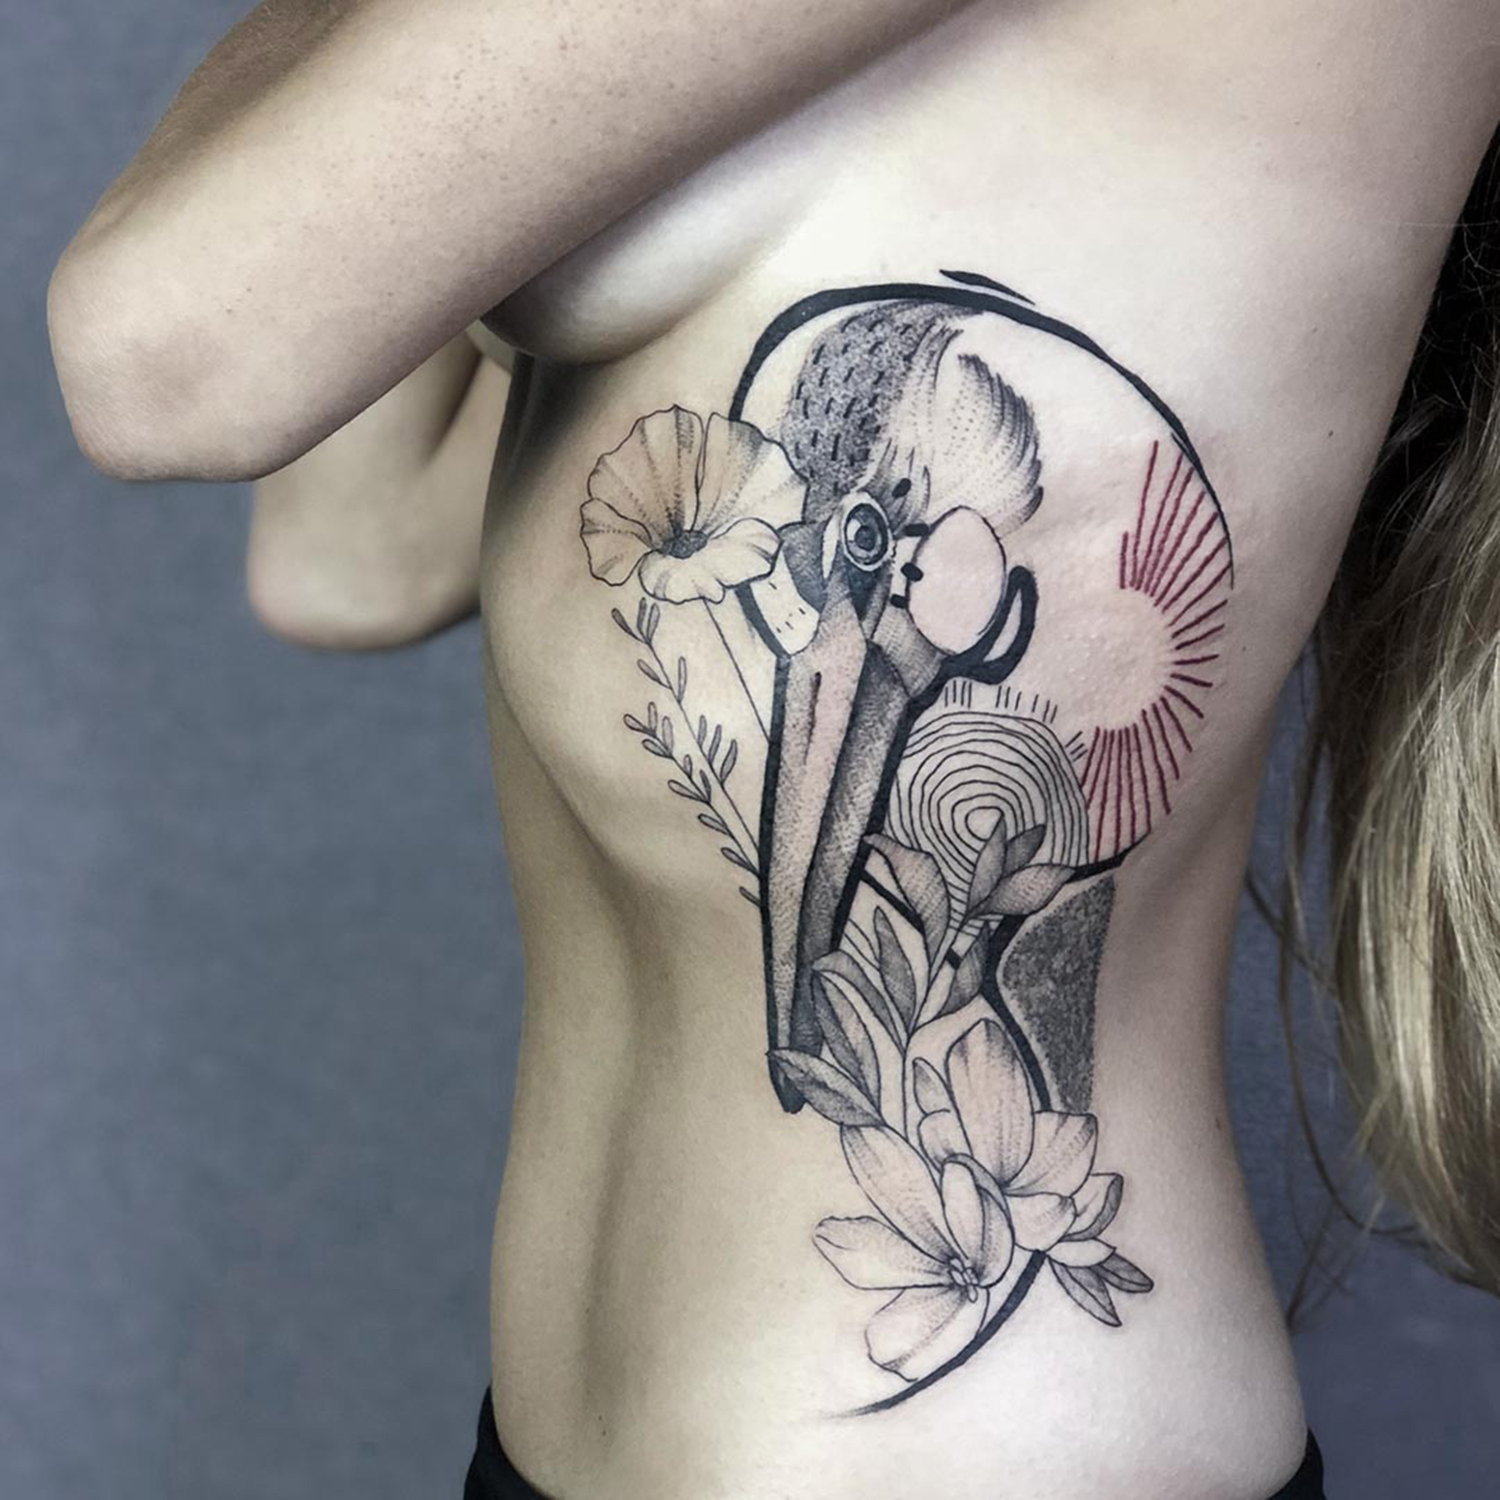 bird and flower tattoo on ribs, by shiran tattoo artist